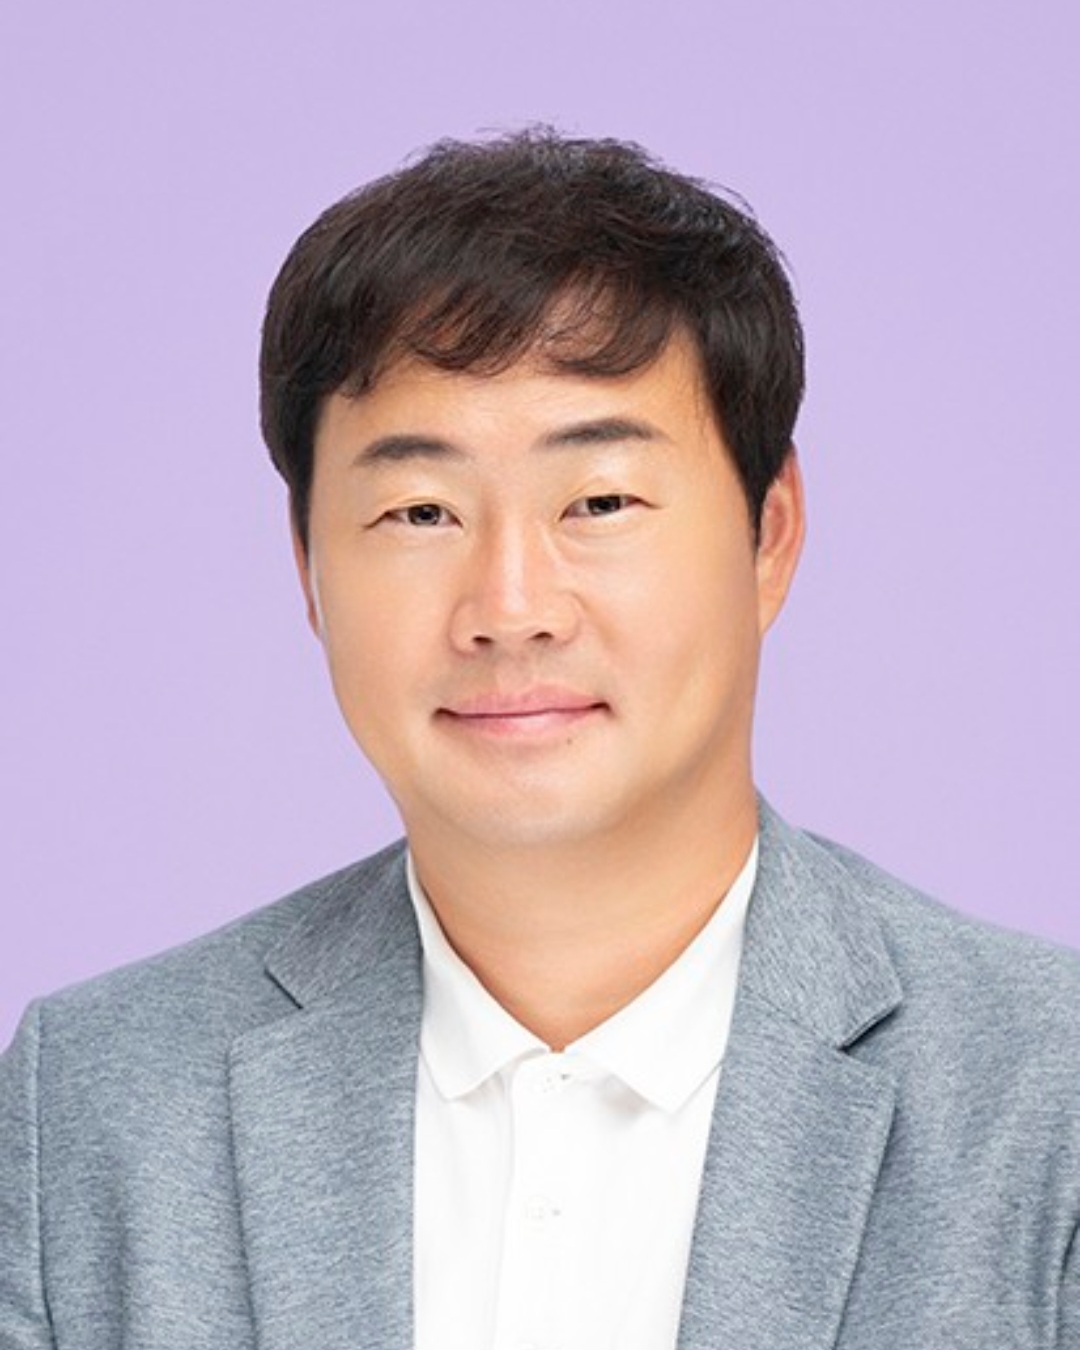 제천시 학교운영위원회위원장 협의회, 협의회장에 김용기 위원장 선출